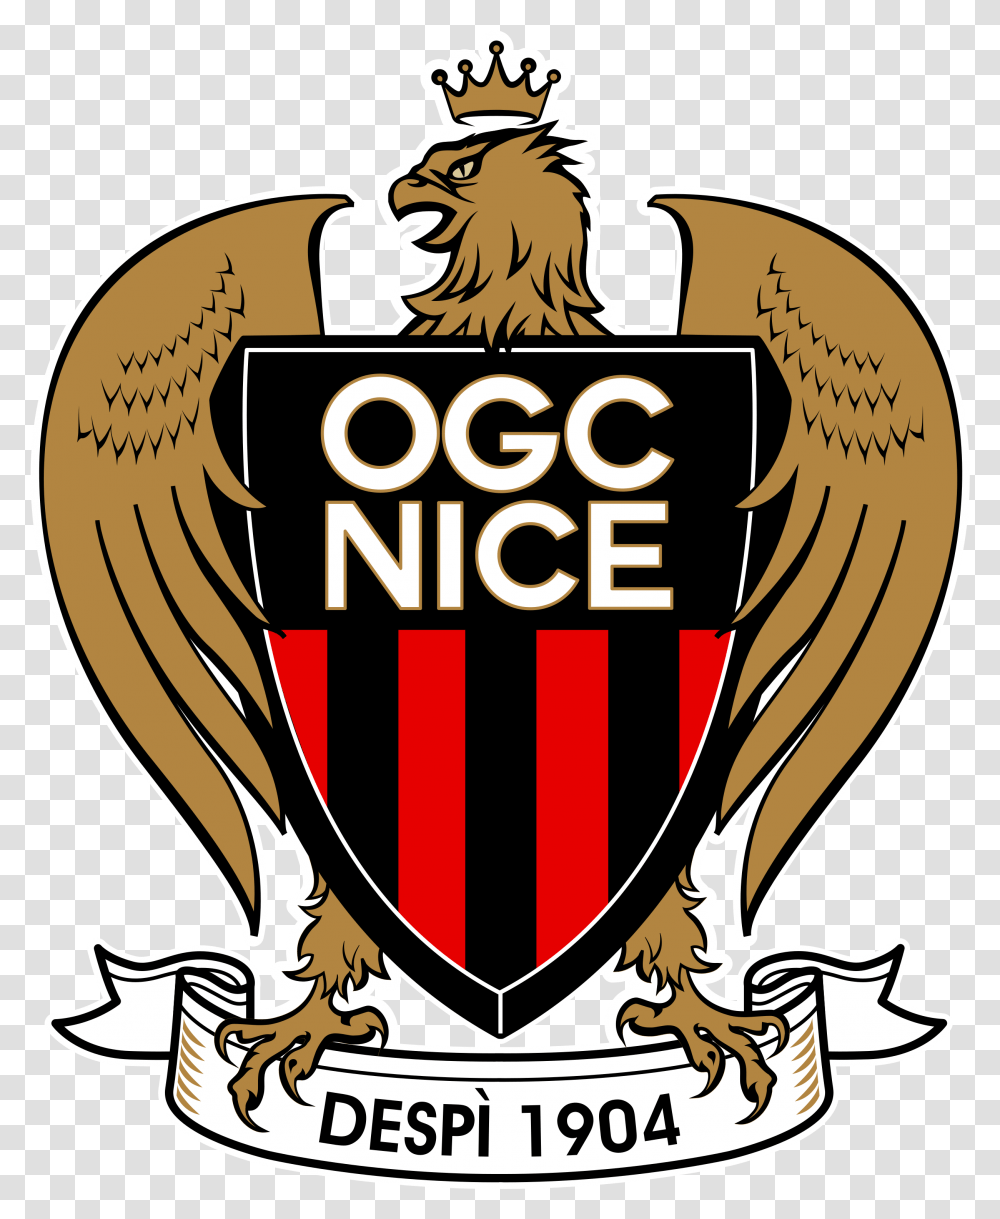 Ogc Nice Logo Ogc Nice Logo, Symbol, Trademark, Emblem, Badge Transparent Png